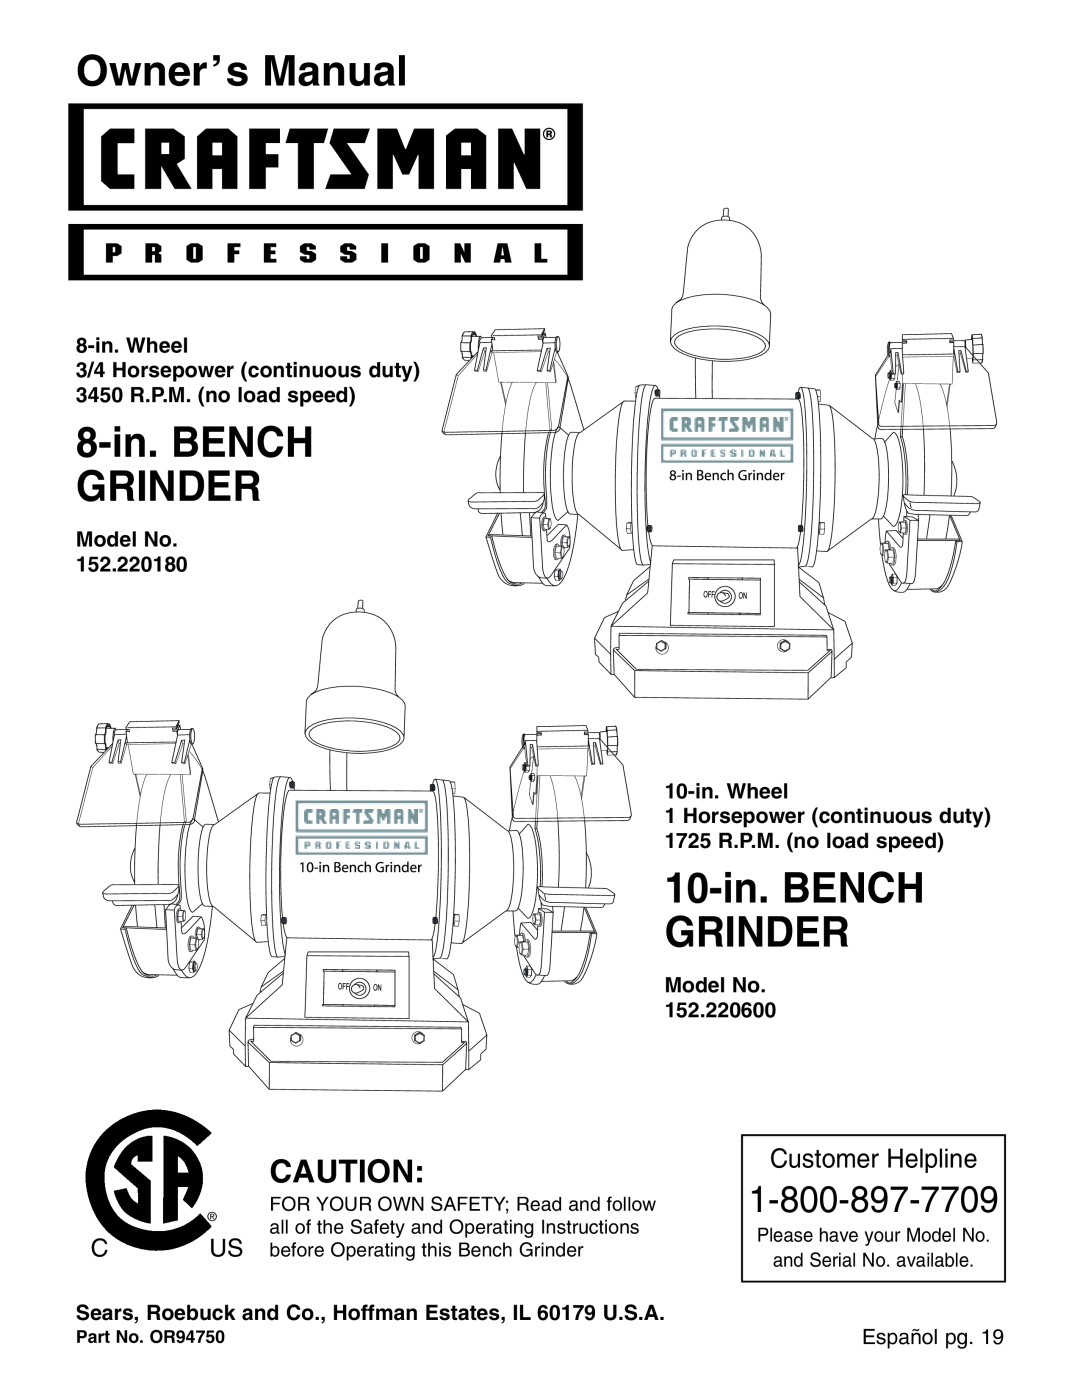 Craftsman 152.22018 owner manual Owner’s Manual, 8-in. BENCH GRINDER, 10-in. BENCH GRINDER, Customer Helpline 